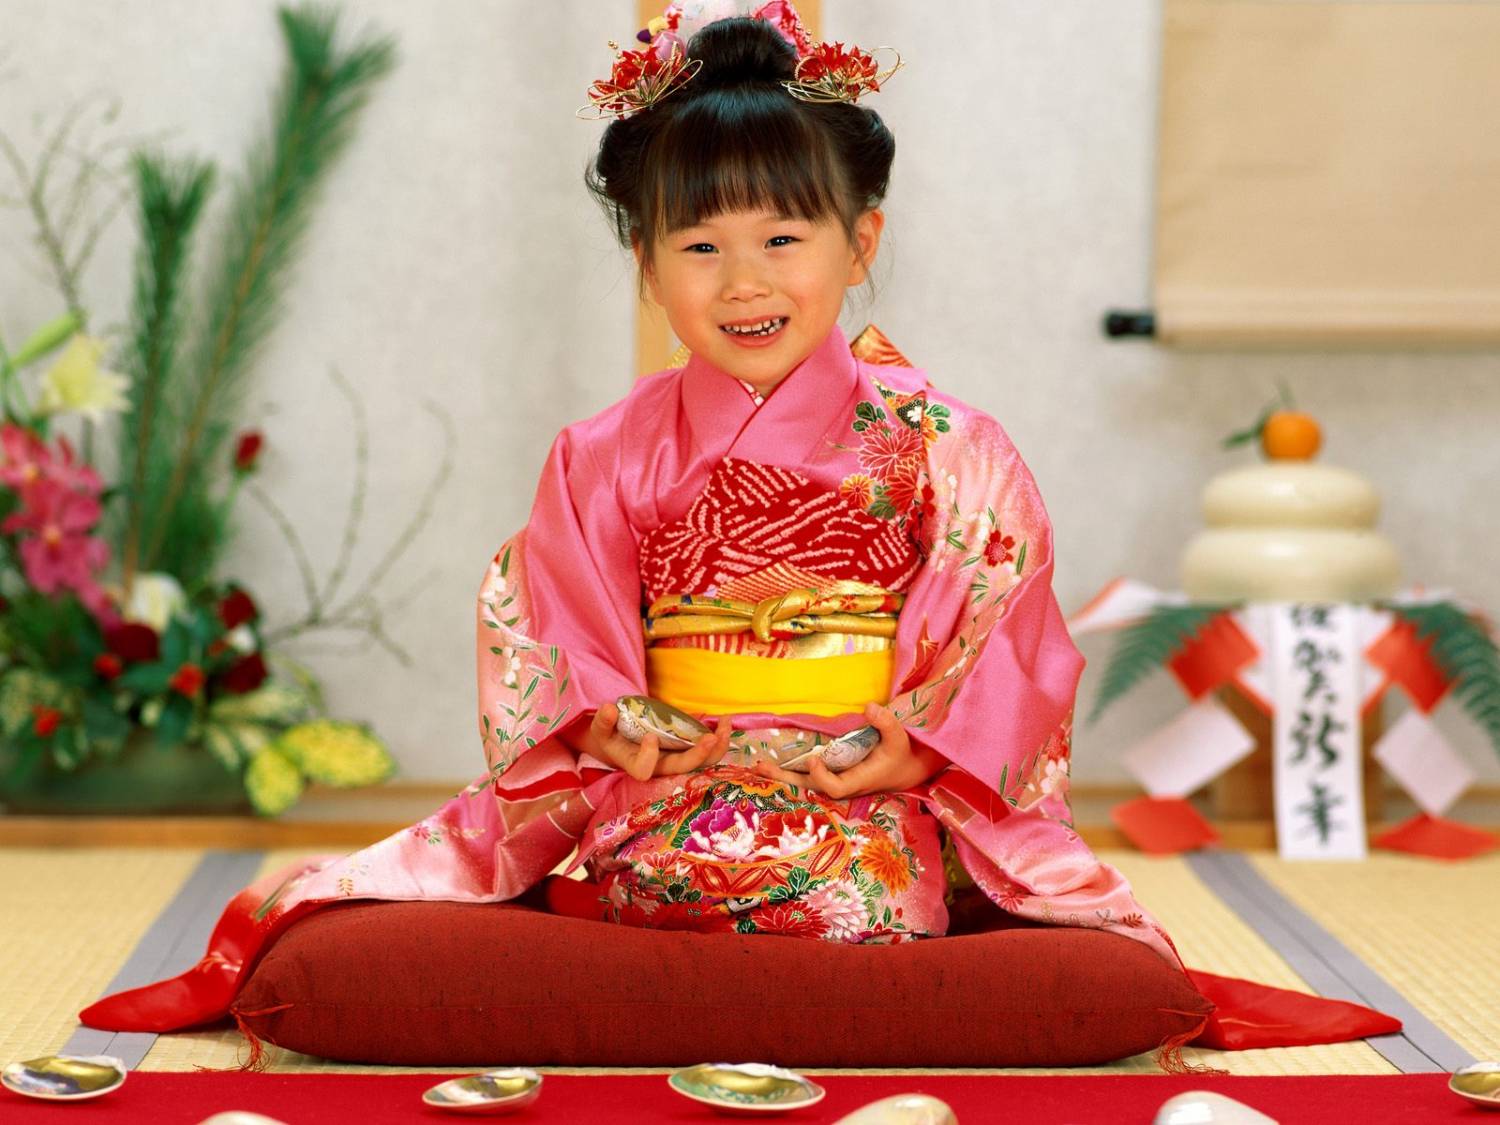 Кимоно с цельнокроеным рукавом — кроим и шьем одежду в японском стиле